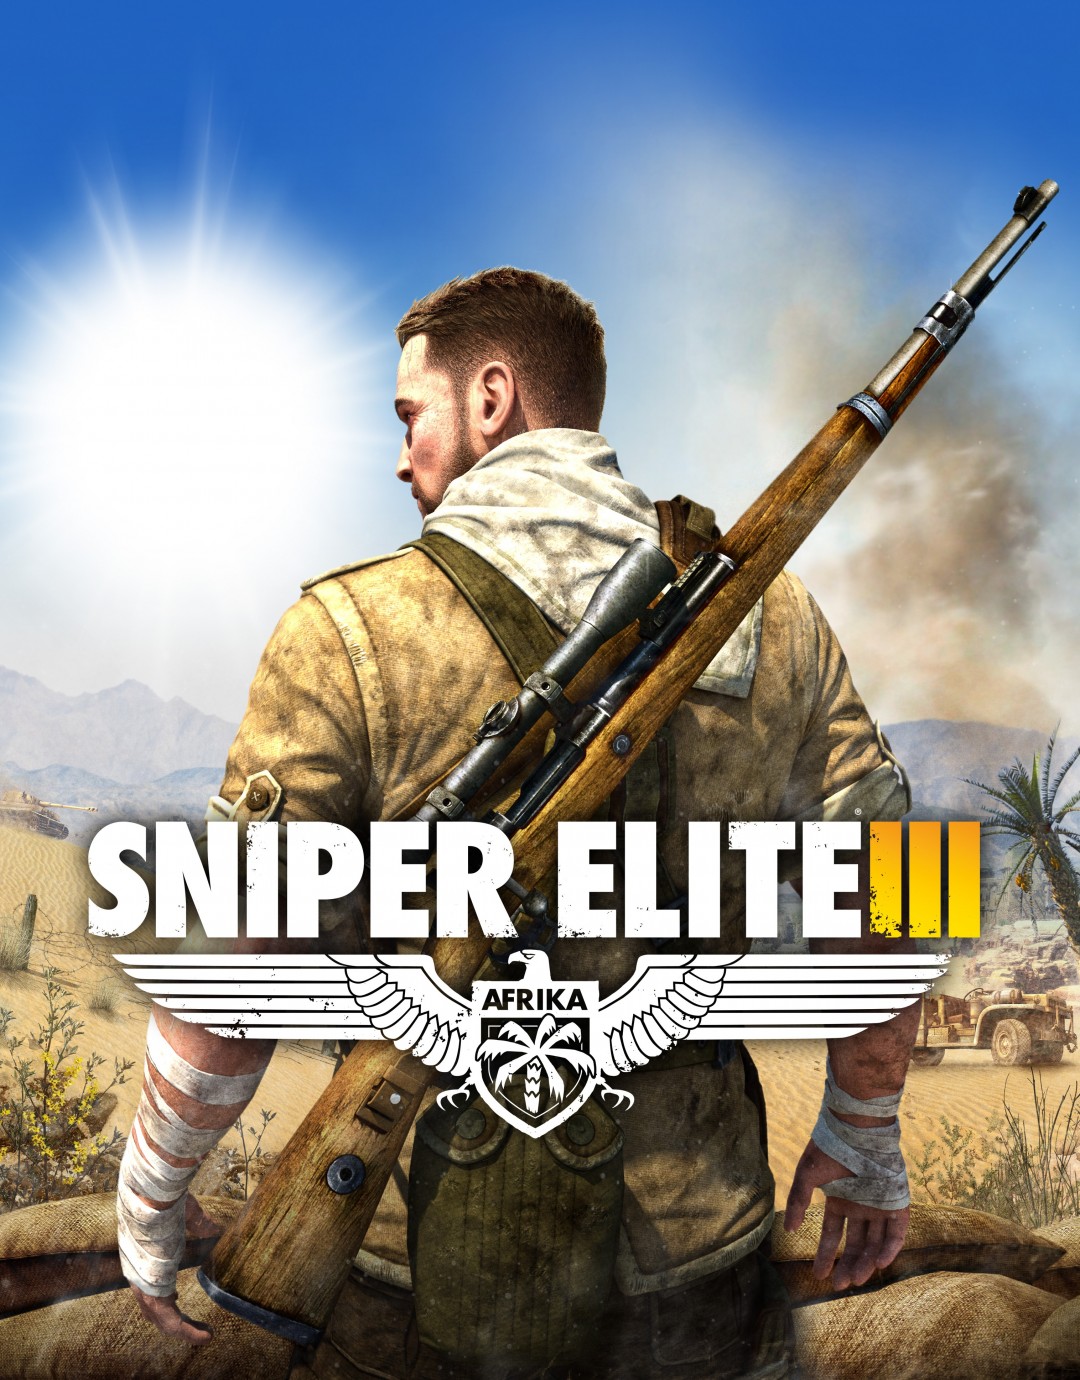 Pc Sniper Elite Iii The Schworak Site - laser tag arena with hyper laser gun beta roblox